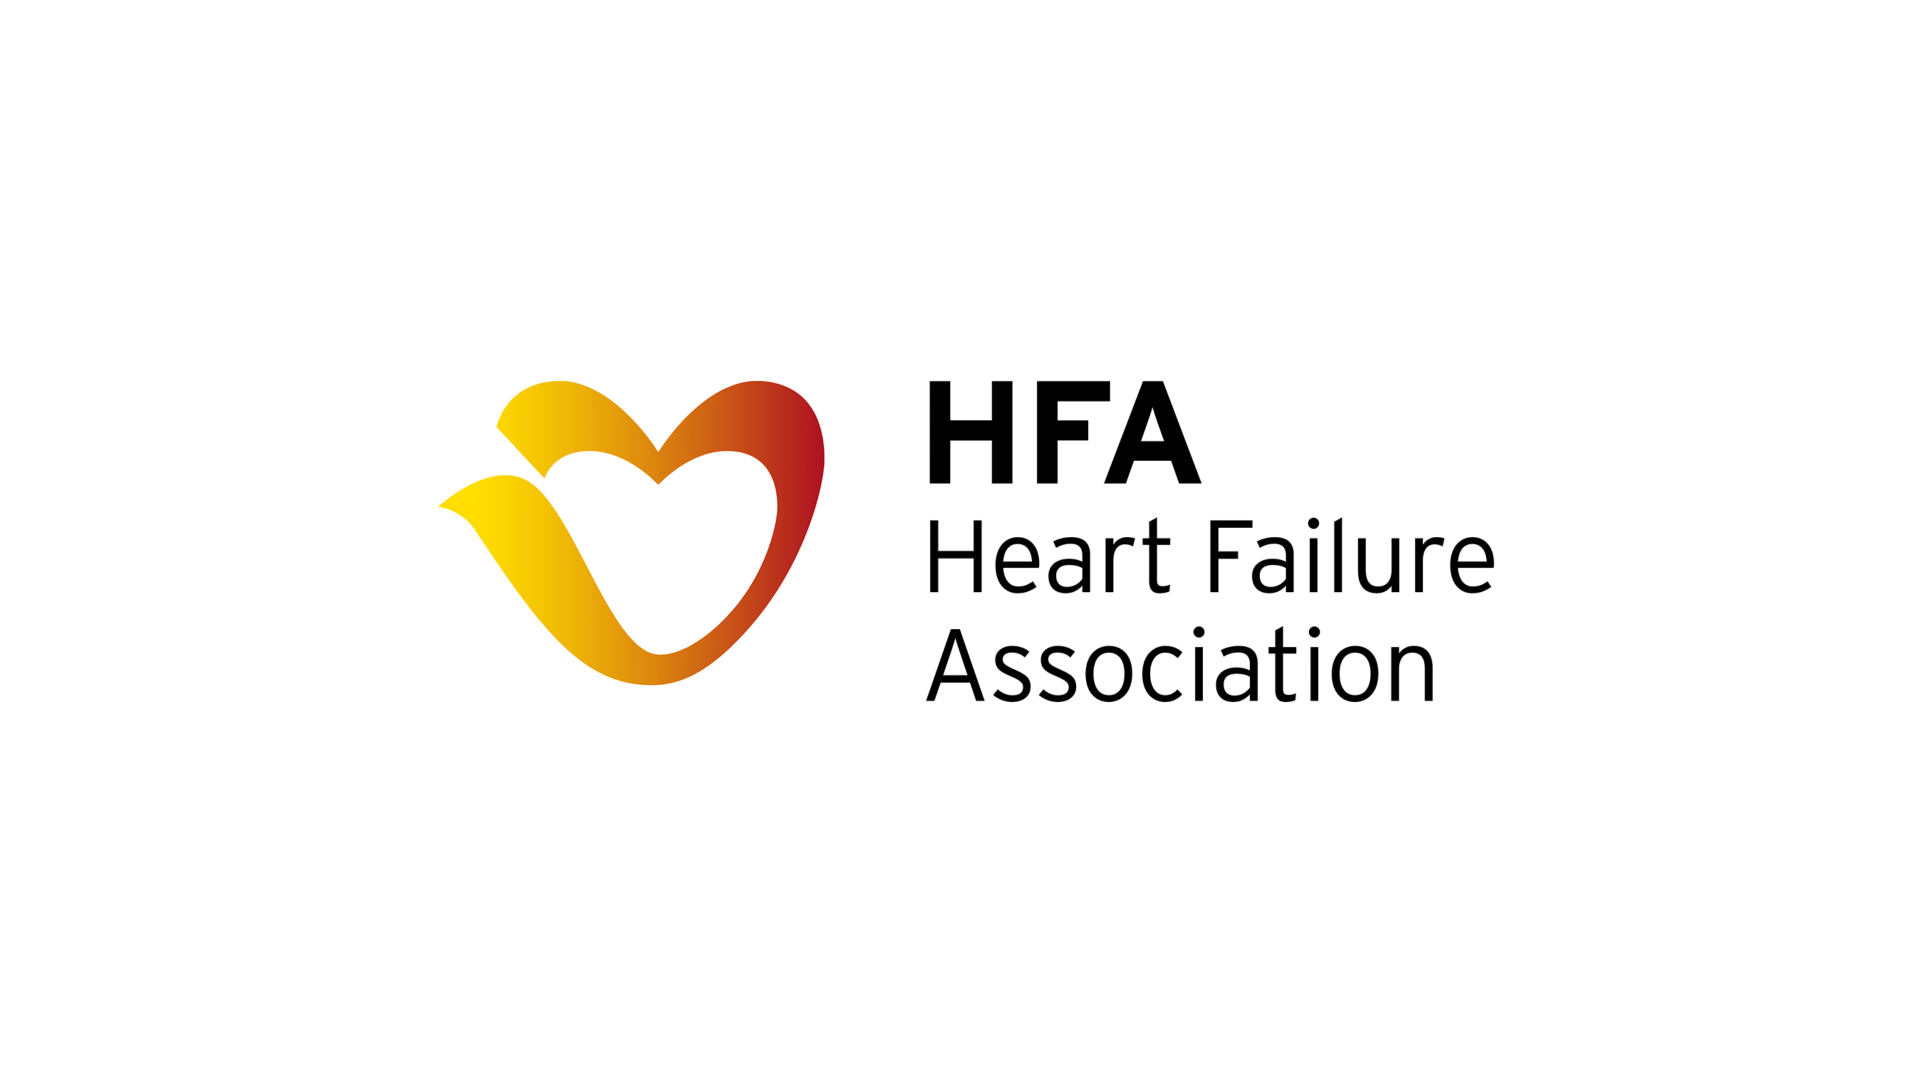 HFA Clinical Trials in Heart Failure Course